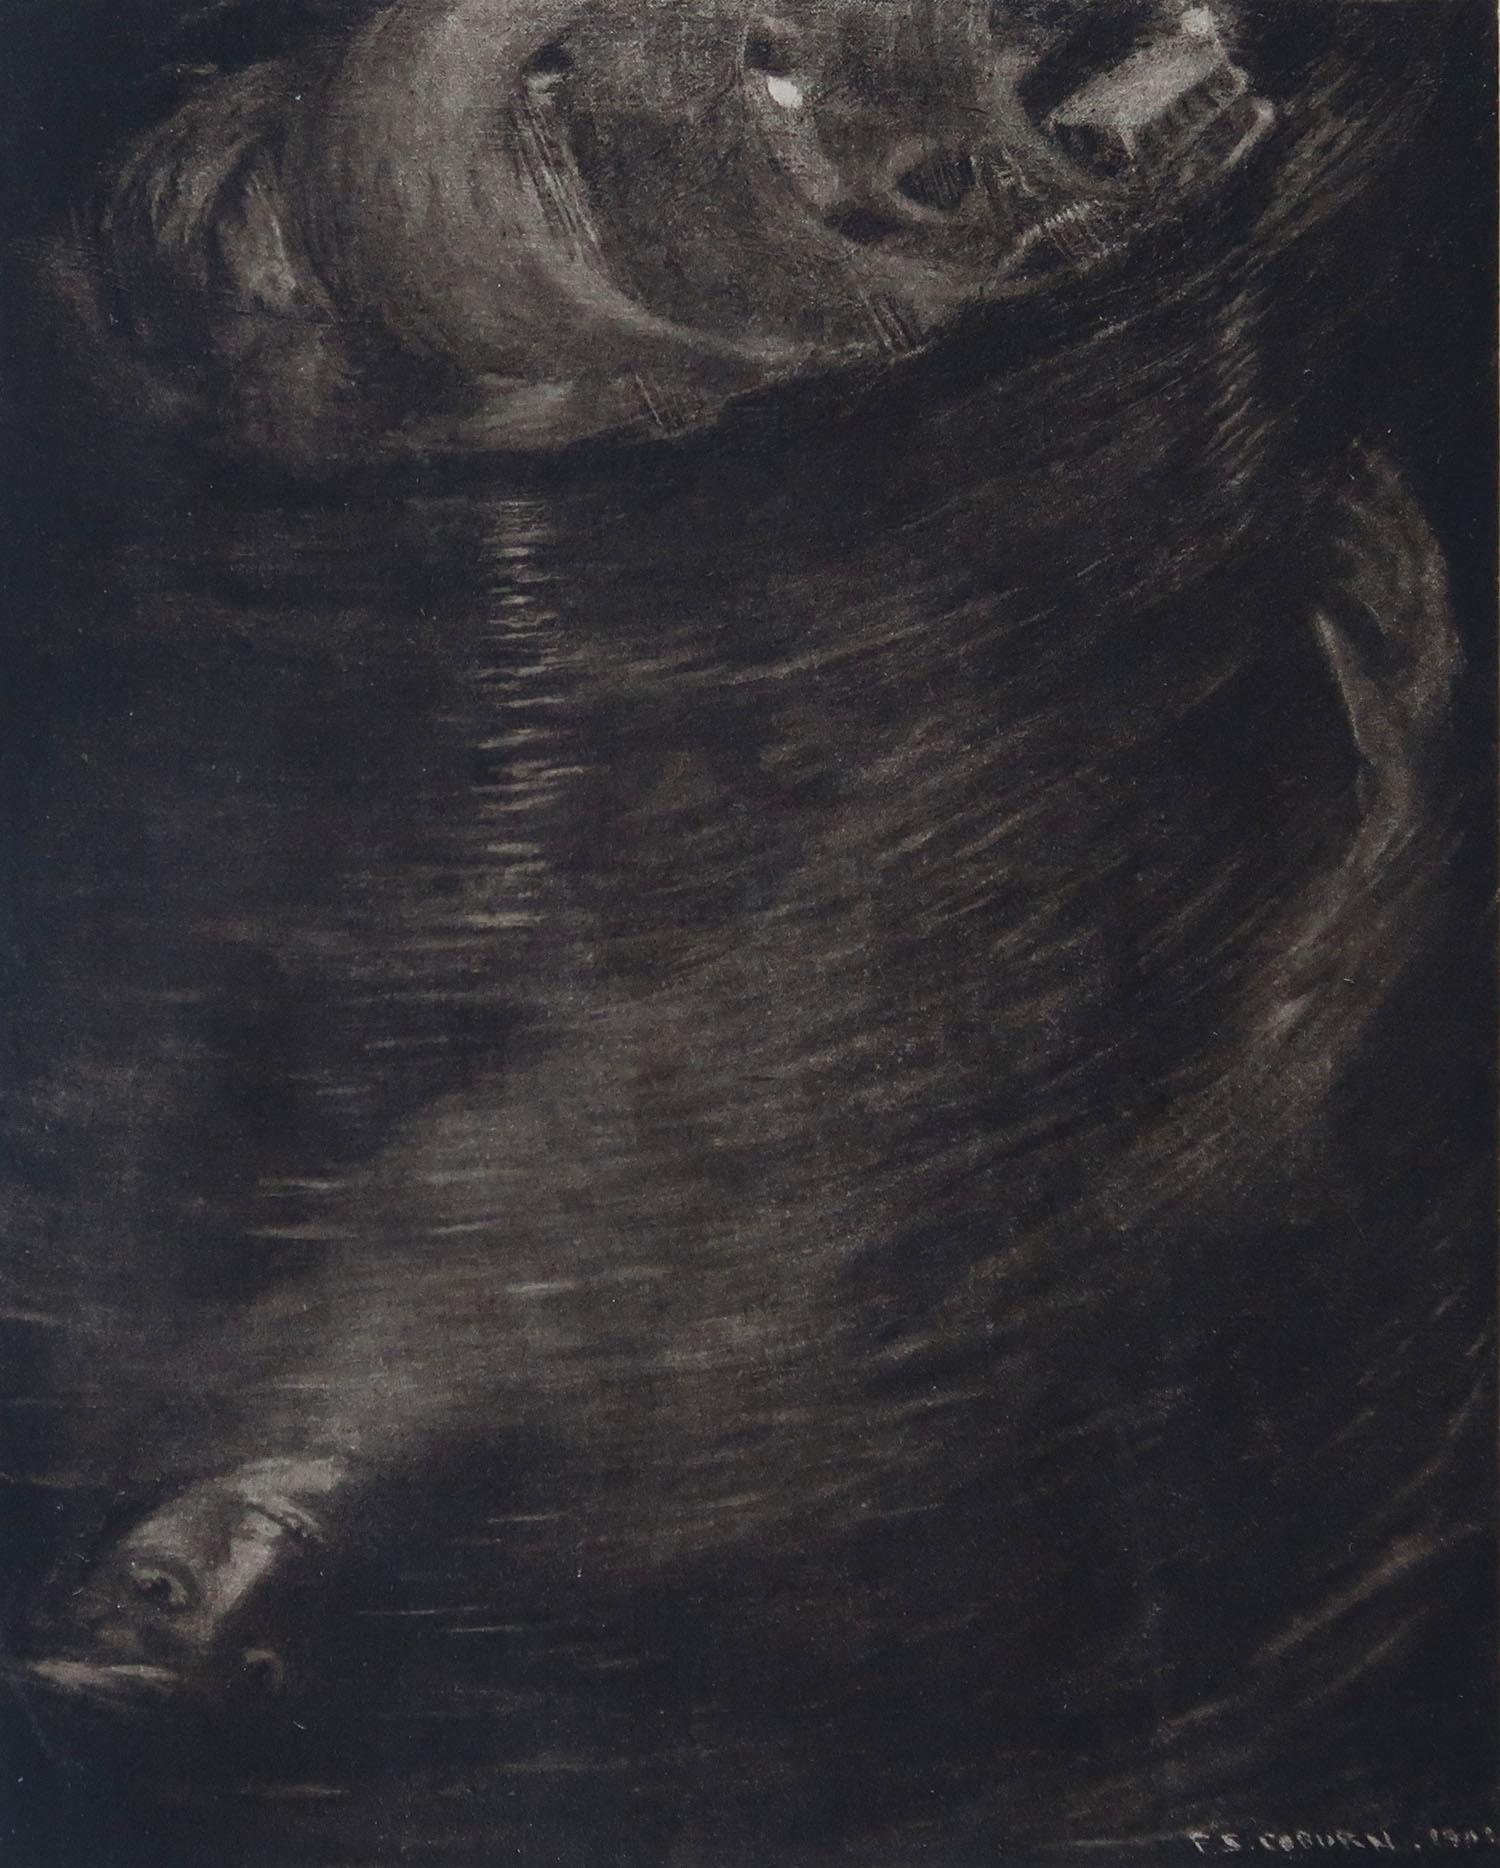 Sensationelles Bild von Frederick Simpson Coburn

Im Stil eines meiner Lieblingskünstler, Goya

Fototiefdruck

Limitierte Auflage von 300 Stück. Dies ist Nr. 84

Aus den Gesamtwerken von Edgar Allen Poe

Veröffentlicht von Putnam, New